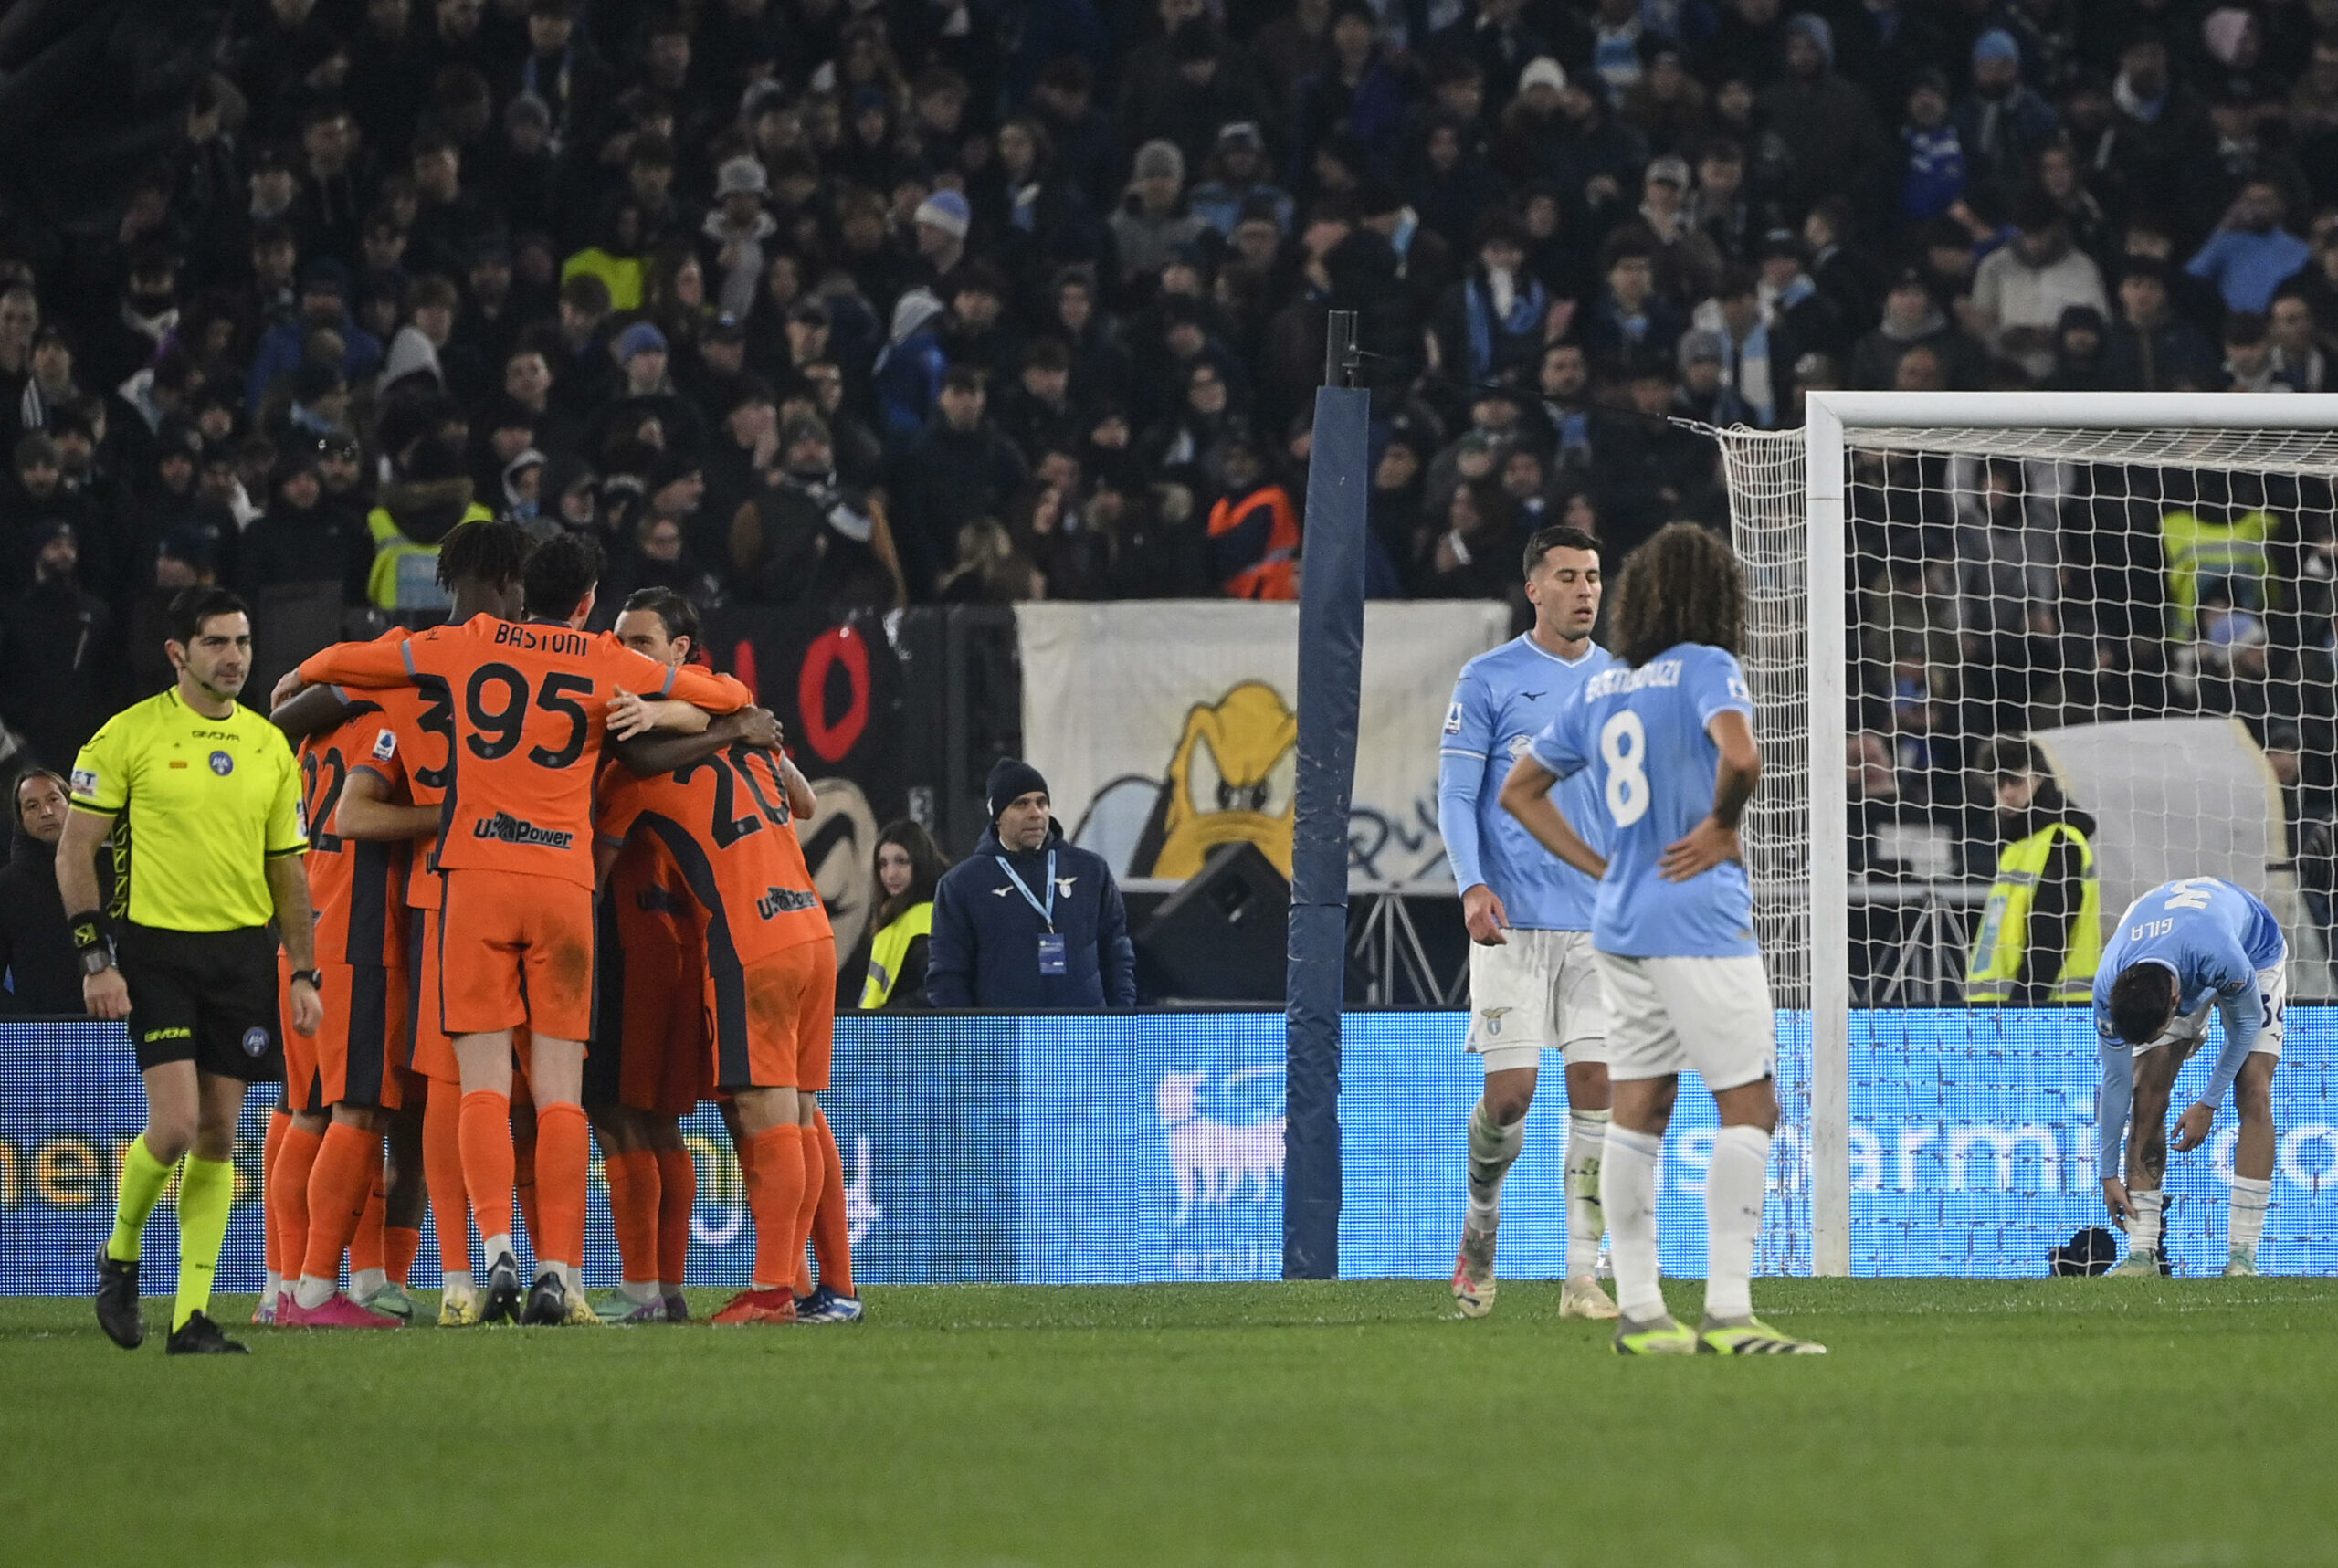 Lazio-Inter, la probabile formazione scelta da Sarri